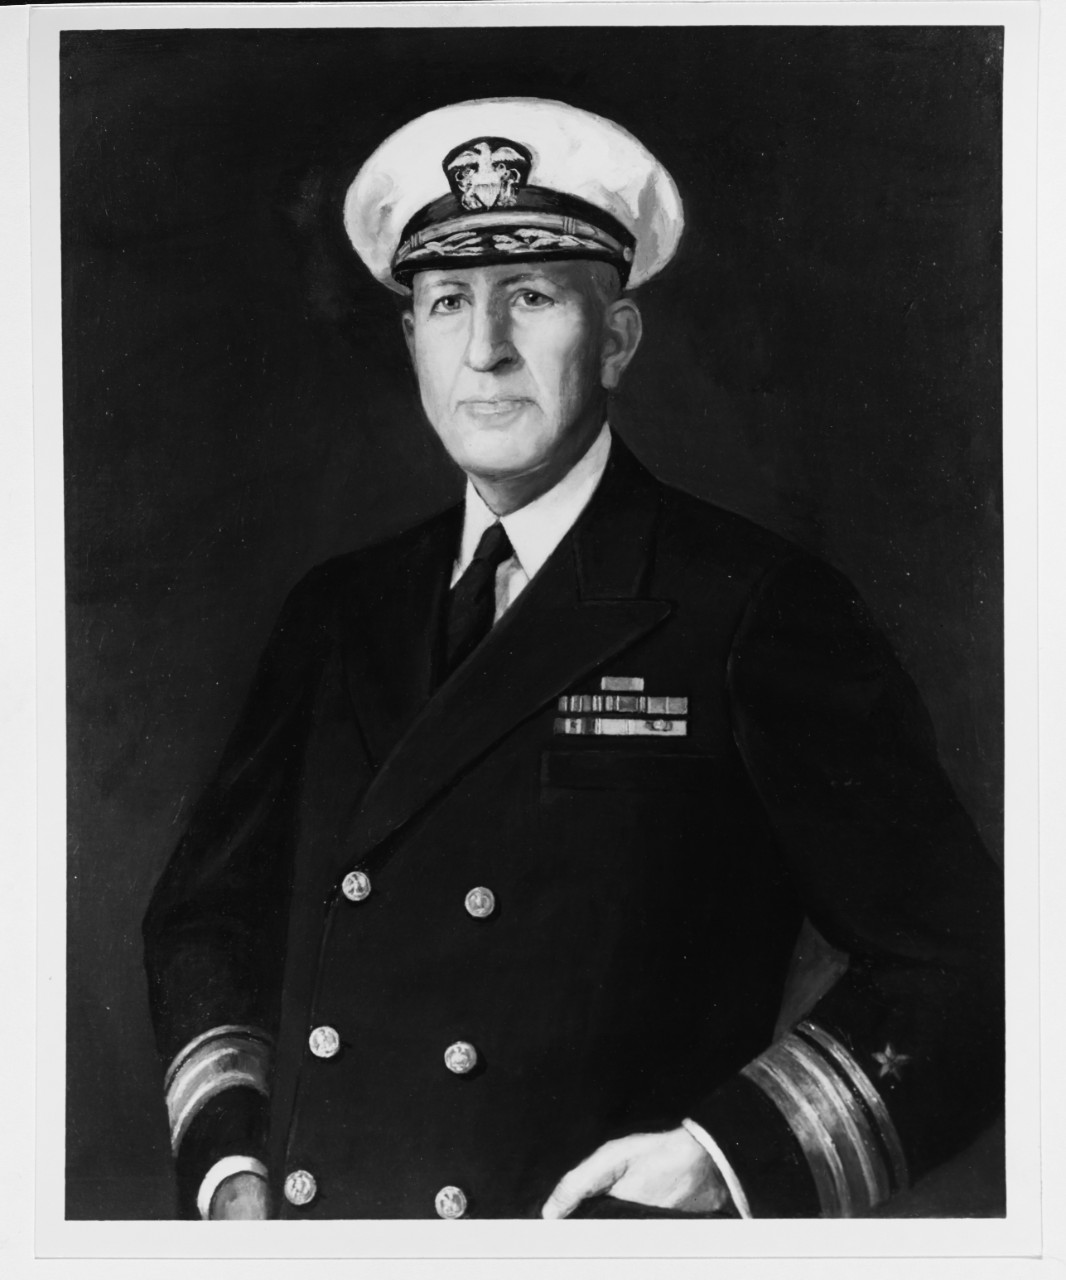 Rear Admiral Allan J. Chantry, Jr.